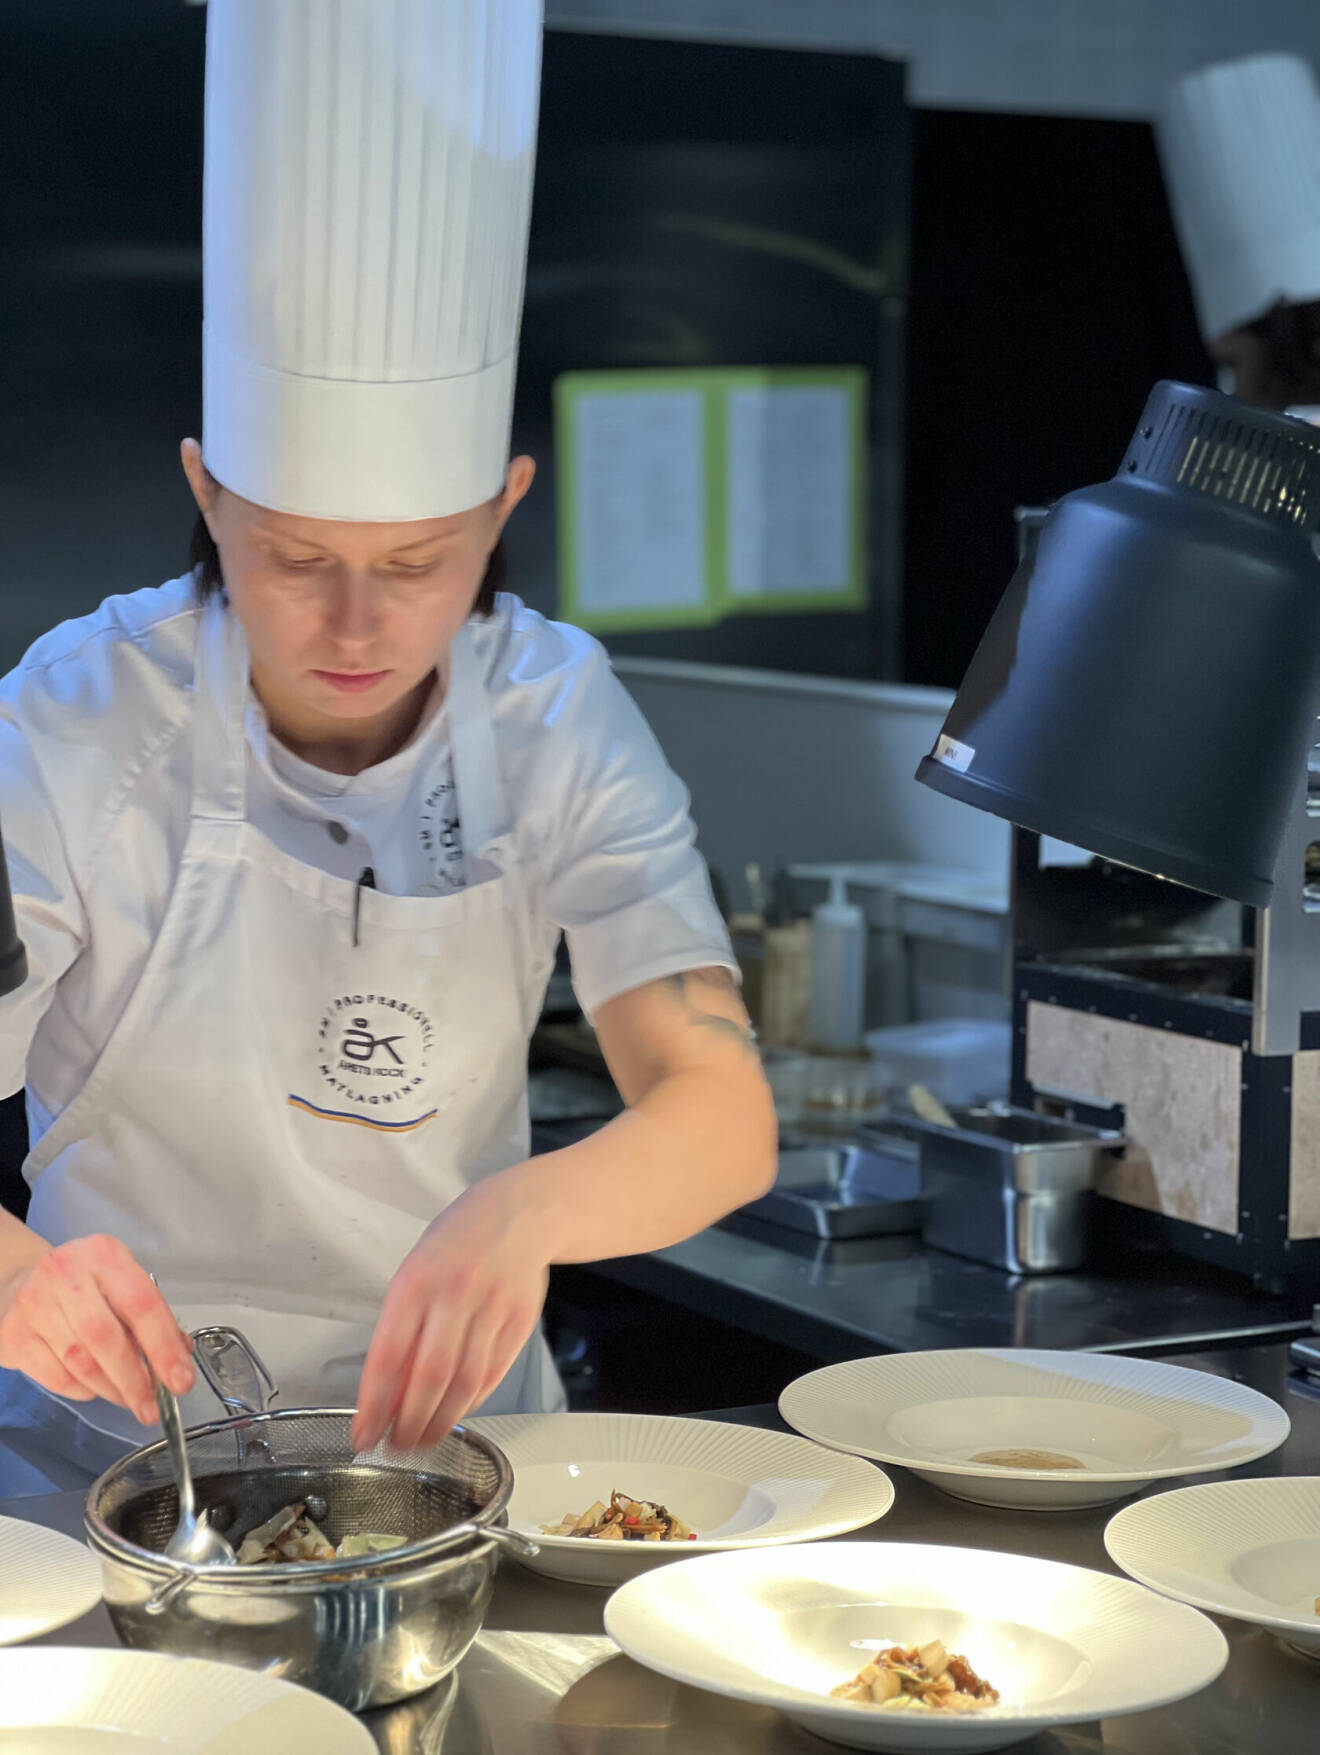 Desirée stod stadigt i den intensiva konkurrensen och visade ett enastående ledarskap i köket.